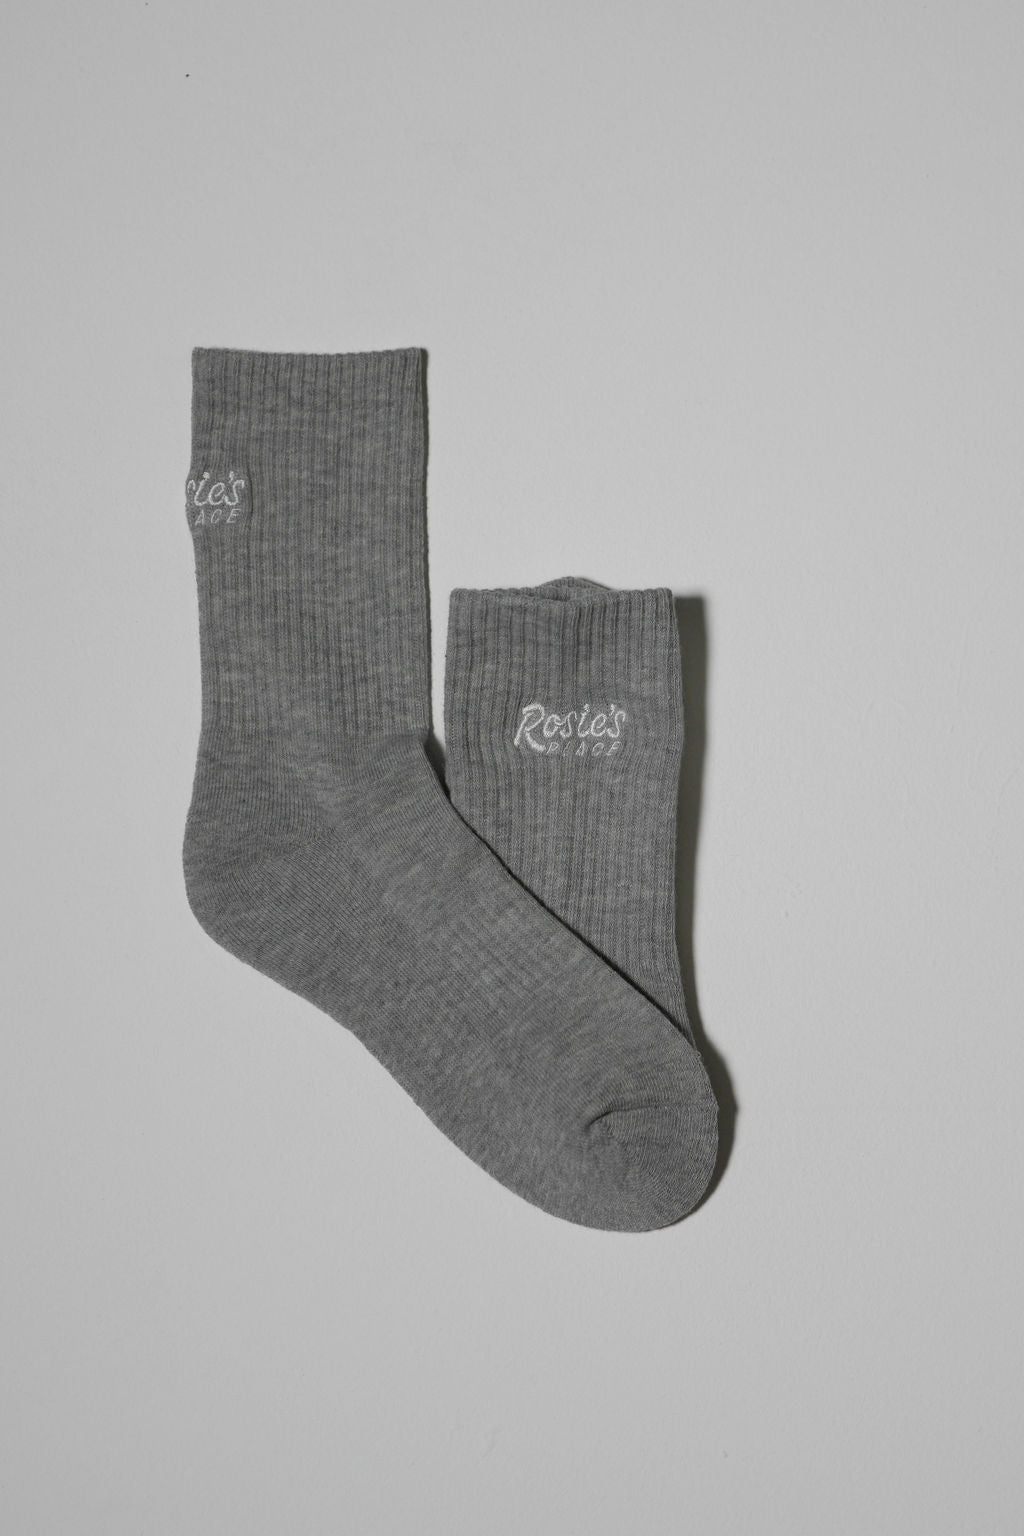 OG Rosie’s Socks